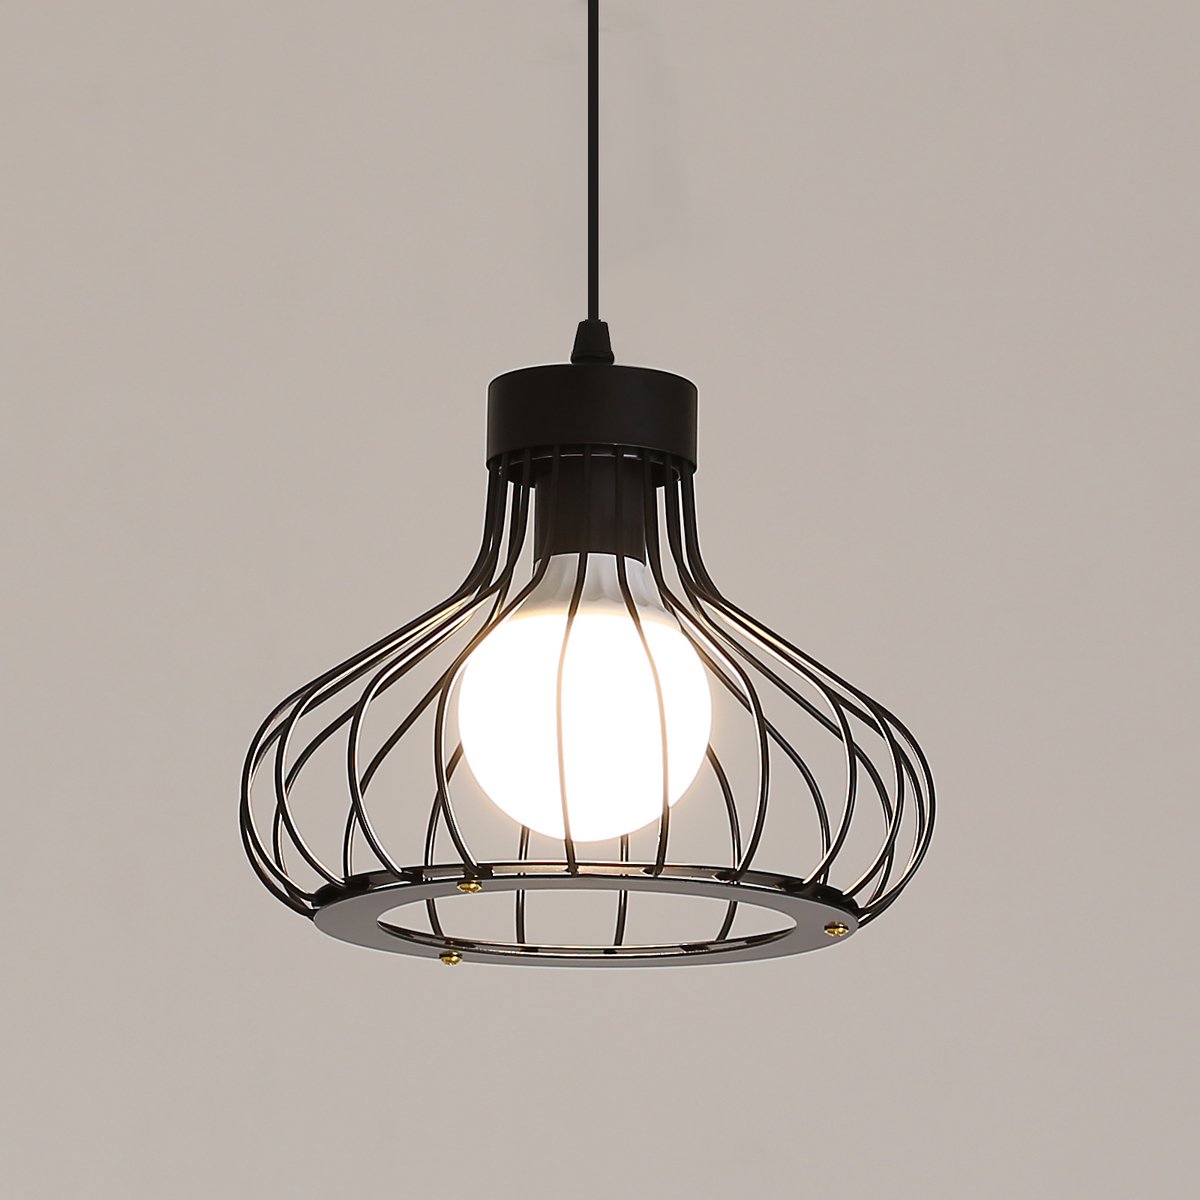 Delaveek-E27 Vintage industriële Hanglamp - Metalen kap - 1,2 meter ophanglijn - Zwart-Dia 23cm (lamp niet inbegrepen)